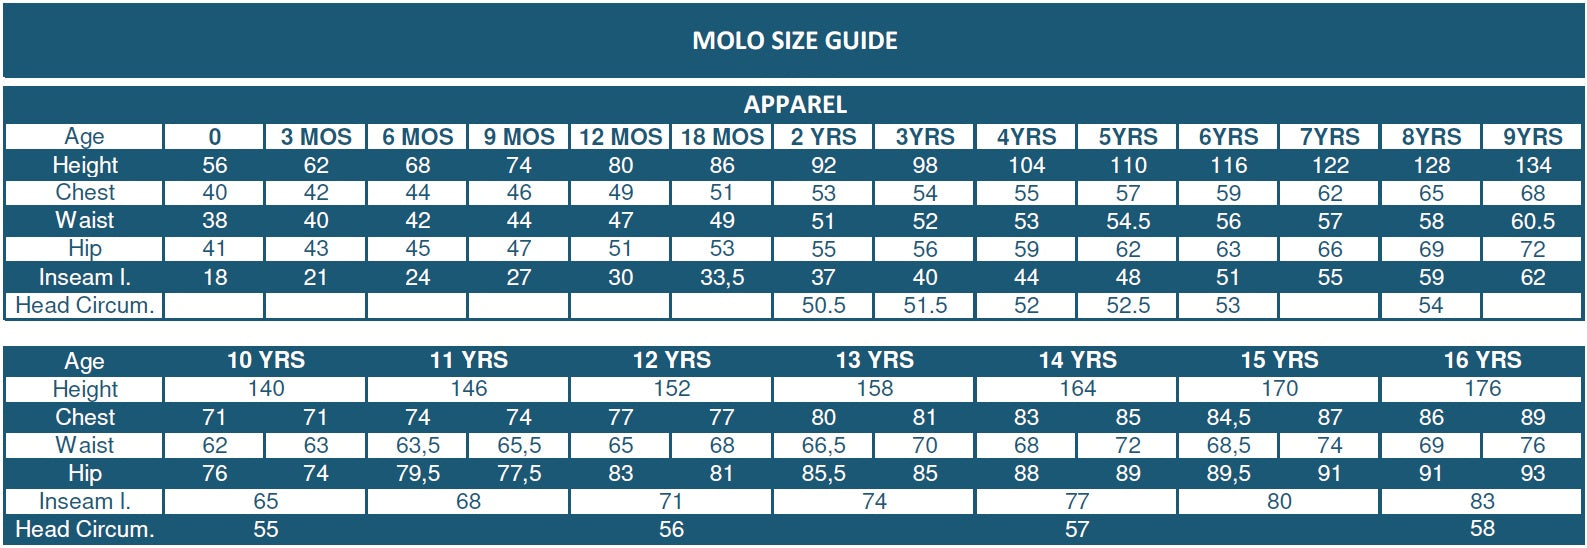 Molo Size Guide